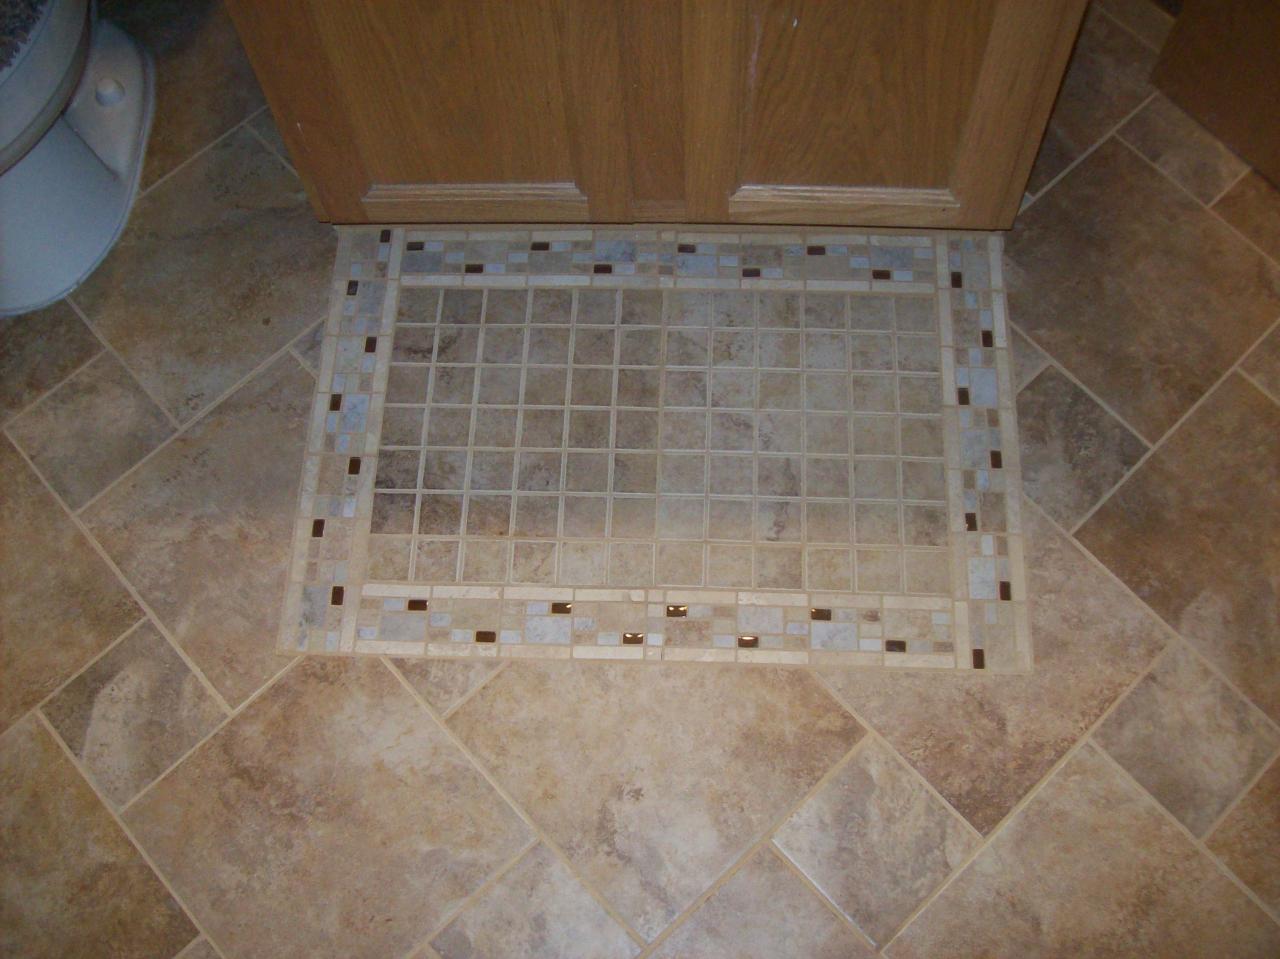 k-endearing-best-ceramic-tile-for-bathroom-ceramic-tile-for-bathroom-floors-ceramic-tile-for-bathroom-floors-not-slippery-12-x-12-ceramic-floor-tile-for-bathroom-ceramic-tile-styles-for-a-bathroom